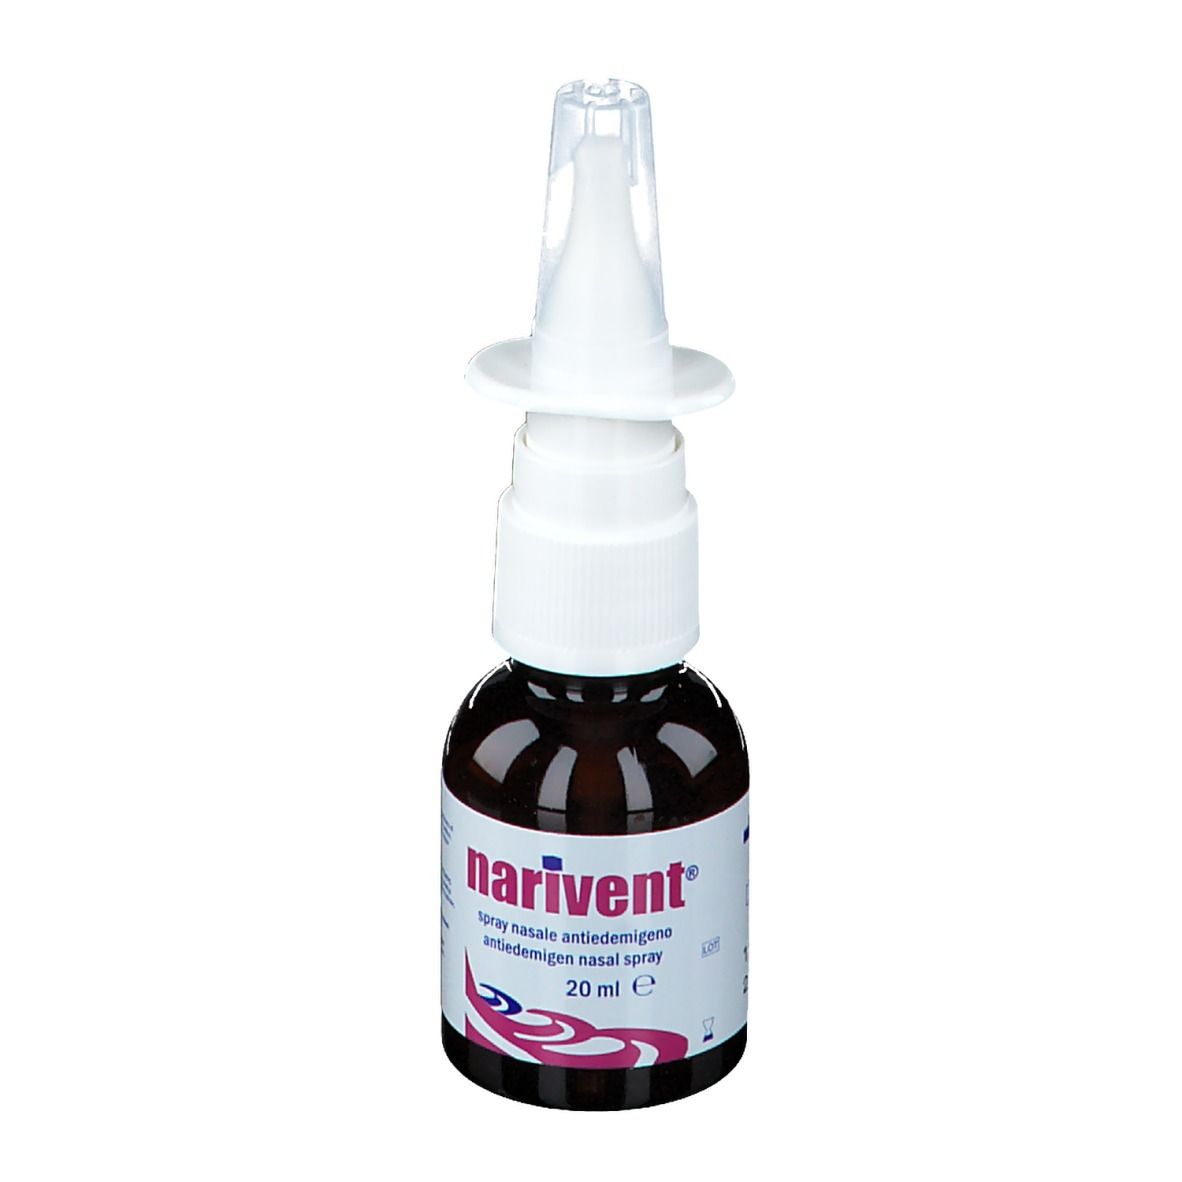 Narivent® Spray Nasale Antiedemigeno